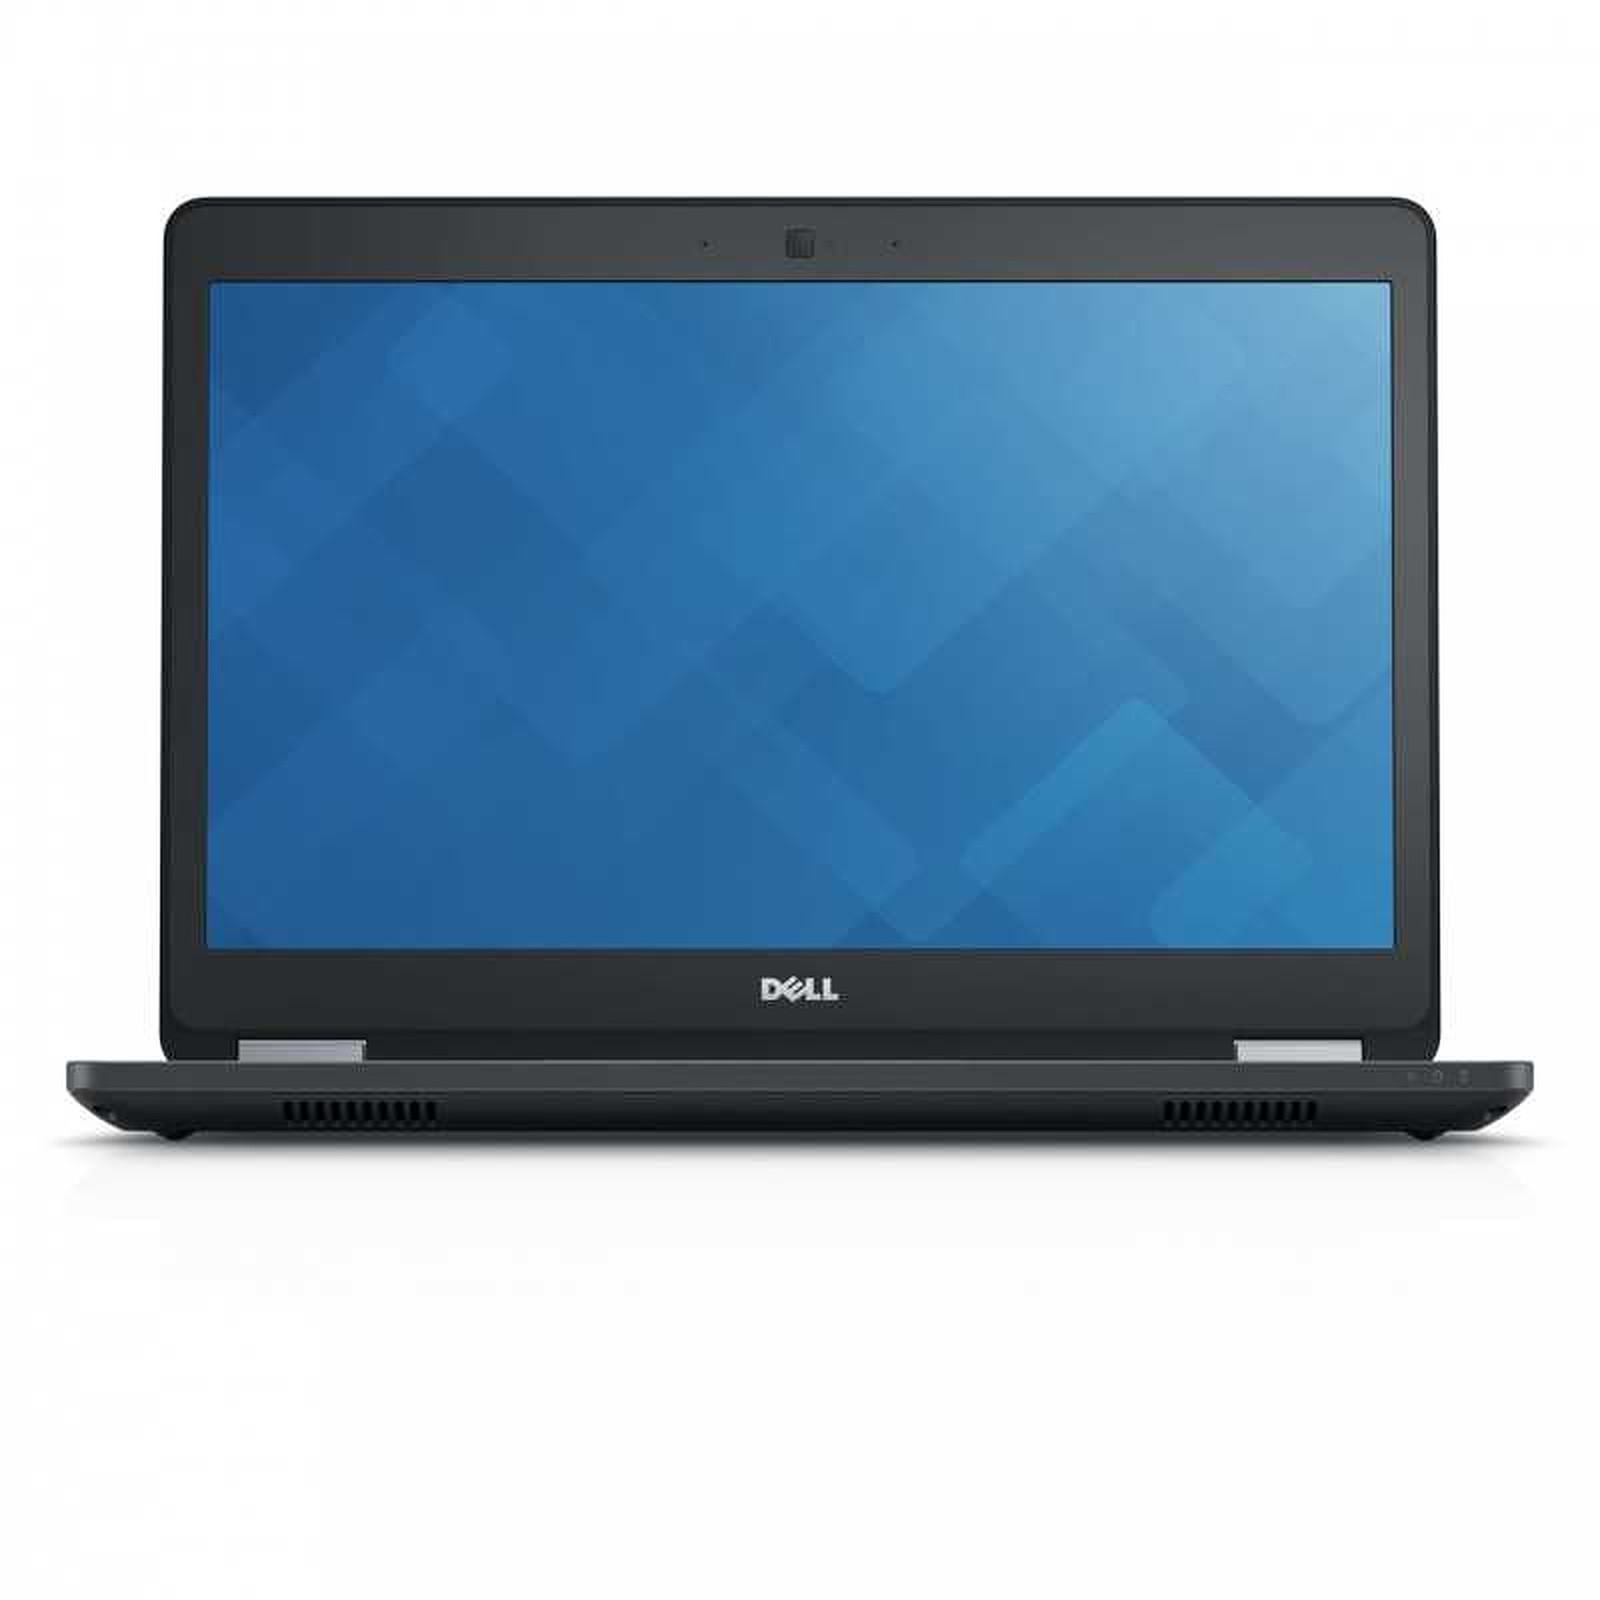 Dell Latitude E5470 (LATE5470-FHD-B-1106) · Reconditionne - PC portable reconditionne Dell